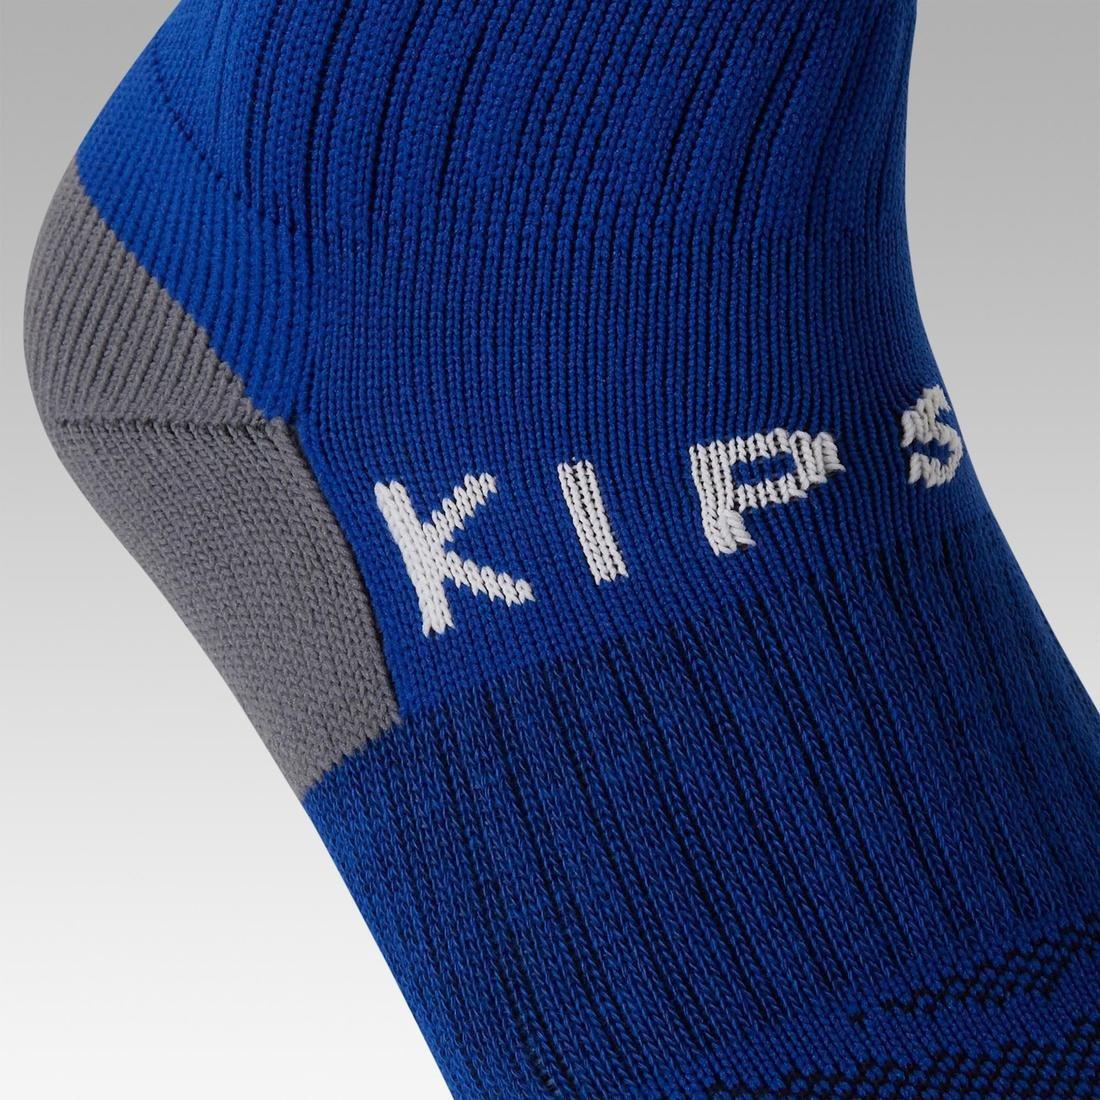 KIPSTA - Football Socks Viralto Club, Blue